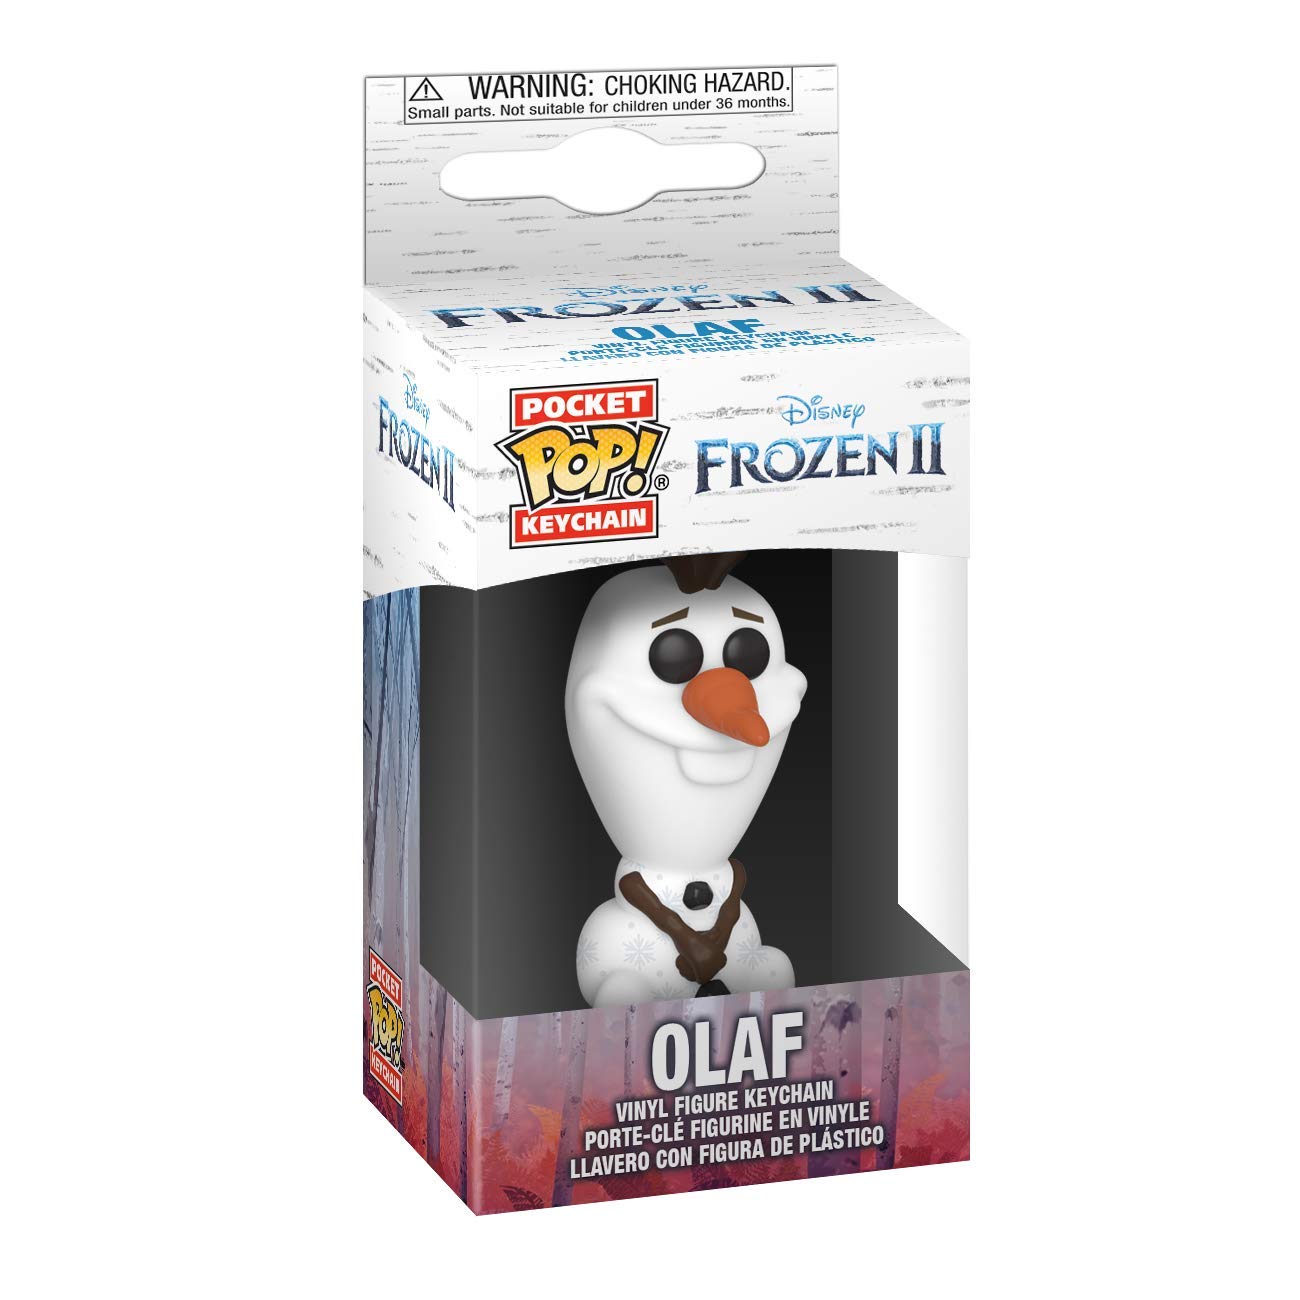 Funko Pop! Keychain: Frozen 2 - Olaf